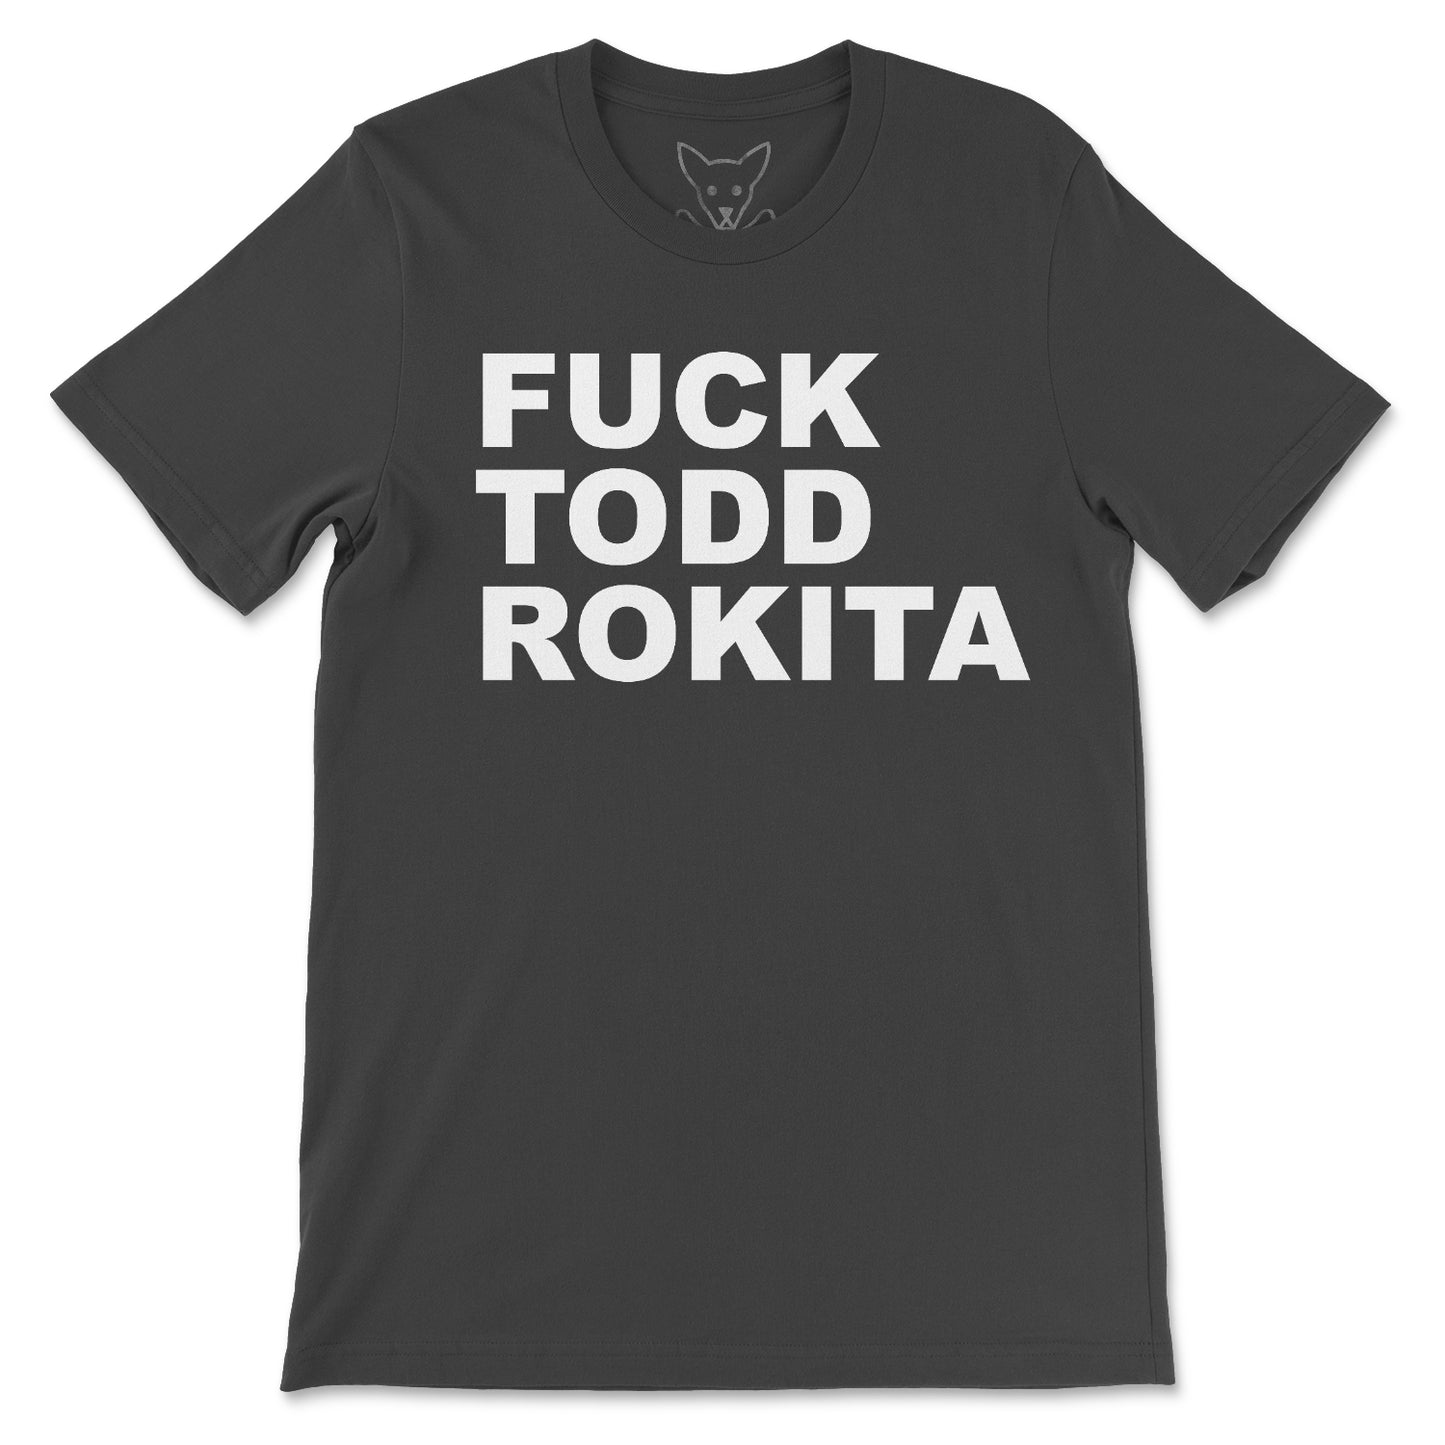 Fuck Todd Rokita Tee